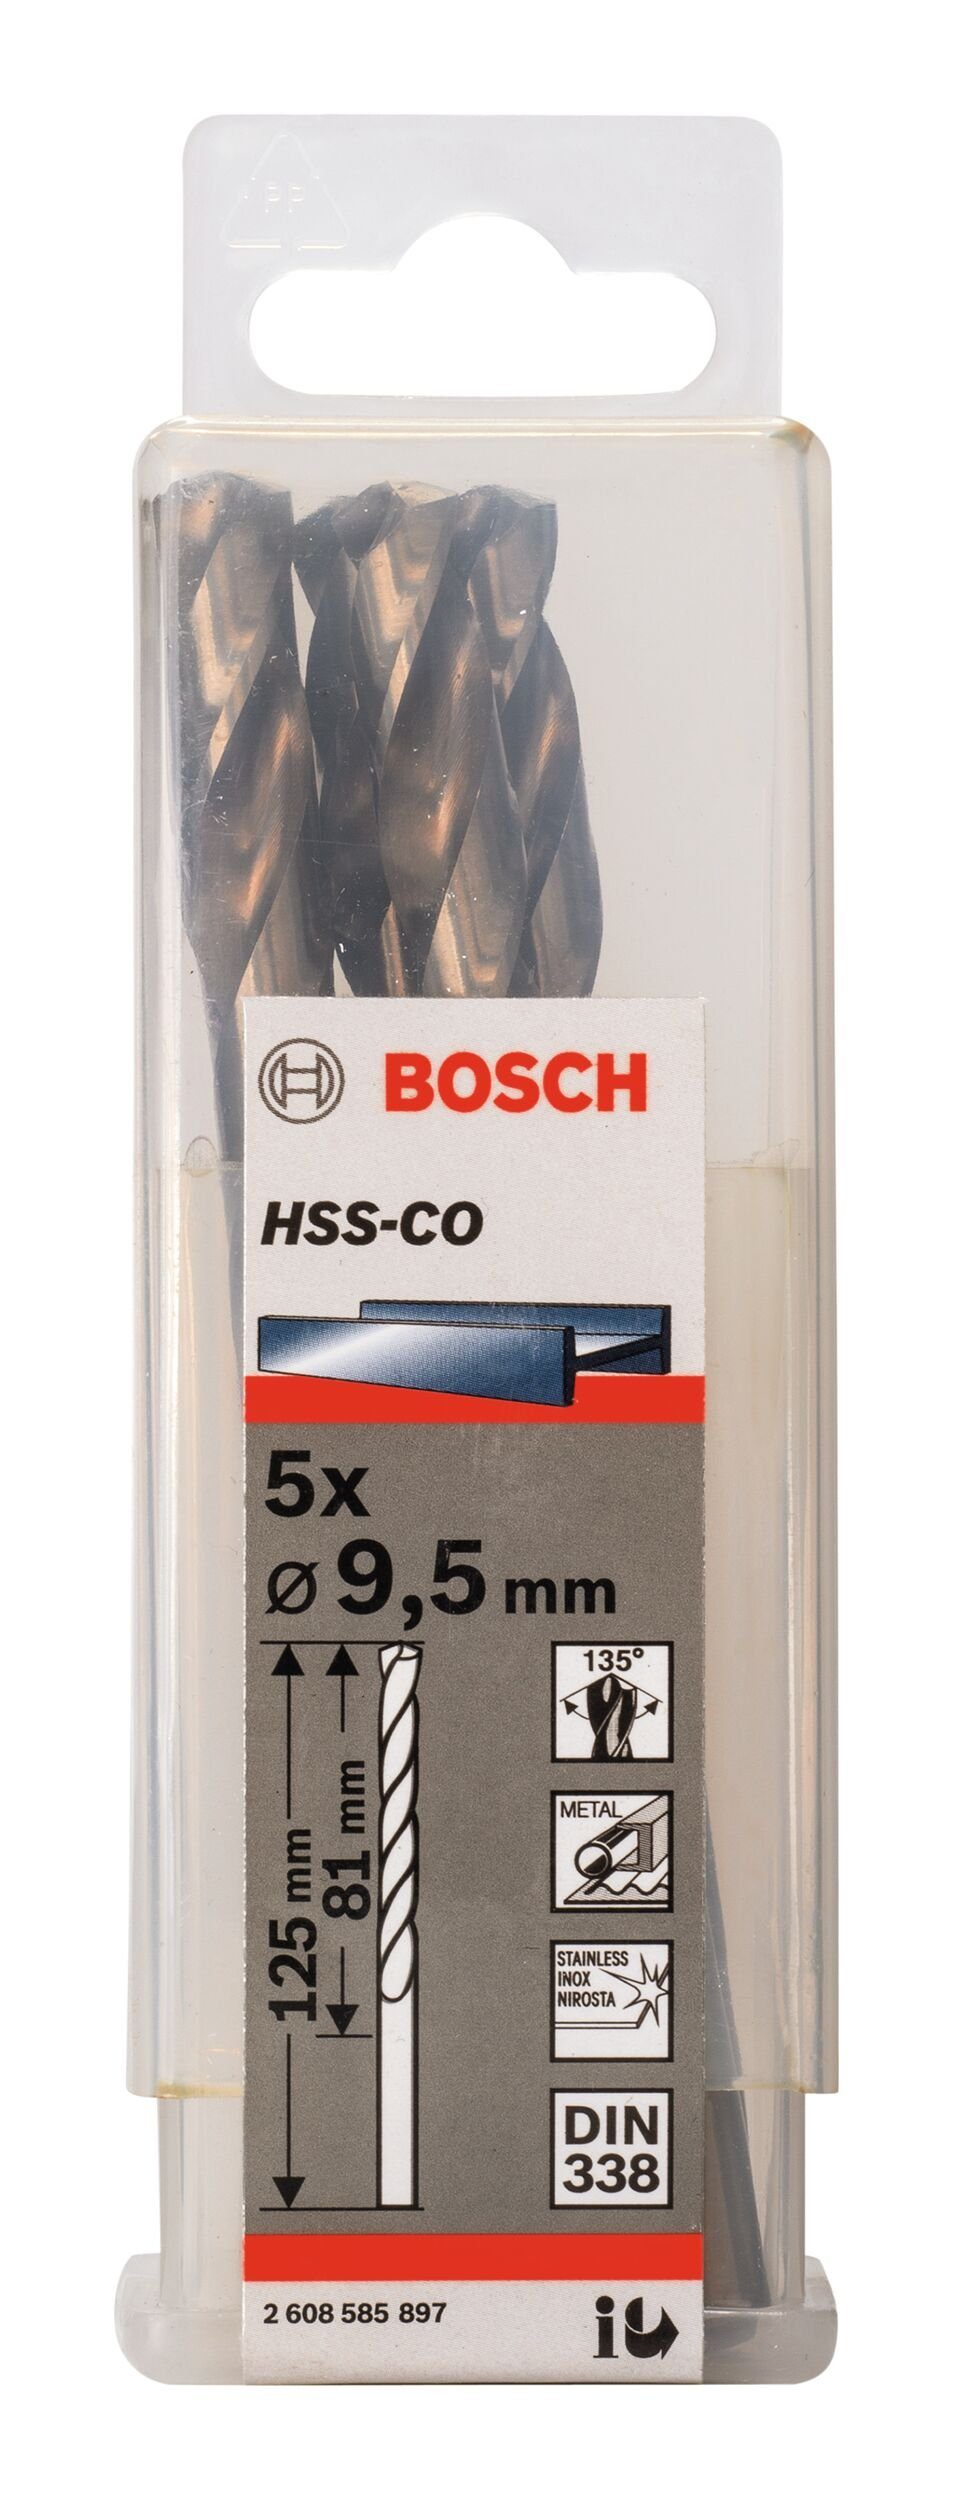 x (5 5er-Pack - Stück), HSS-Co - 9,5 125 x (DIN BOSCH mm 81 Metallbohrer, 338)